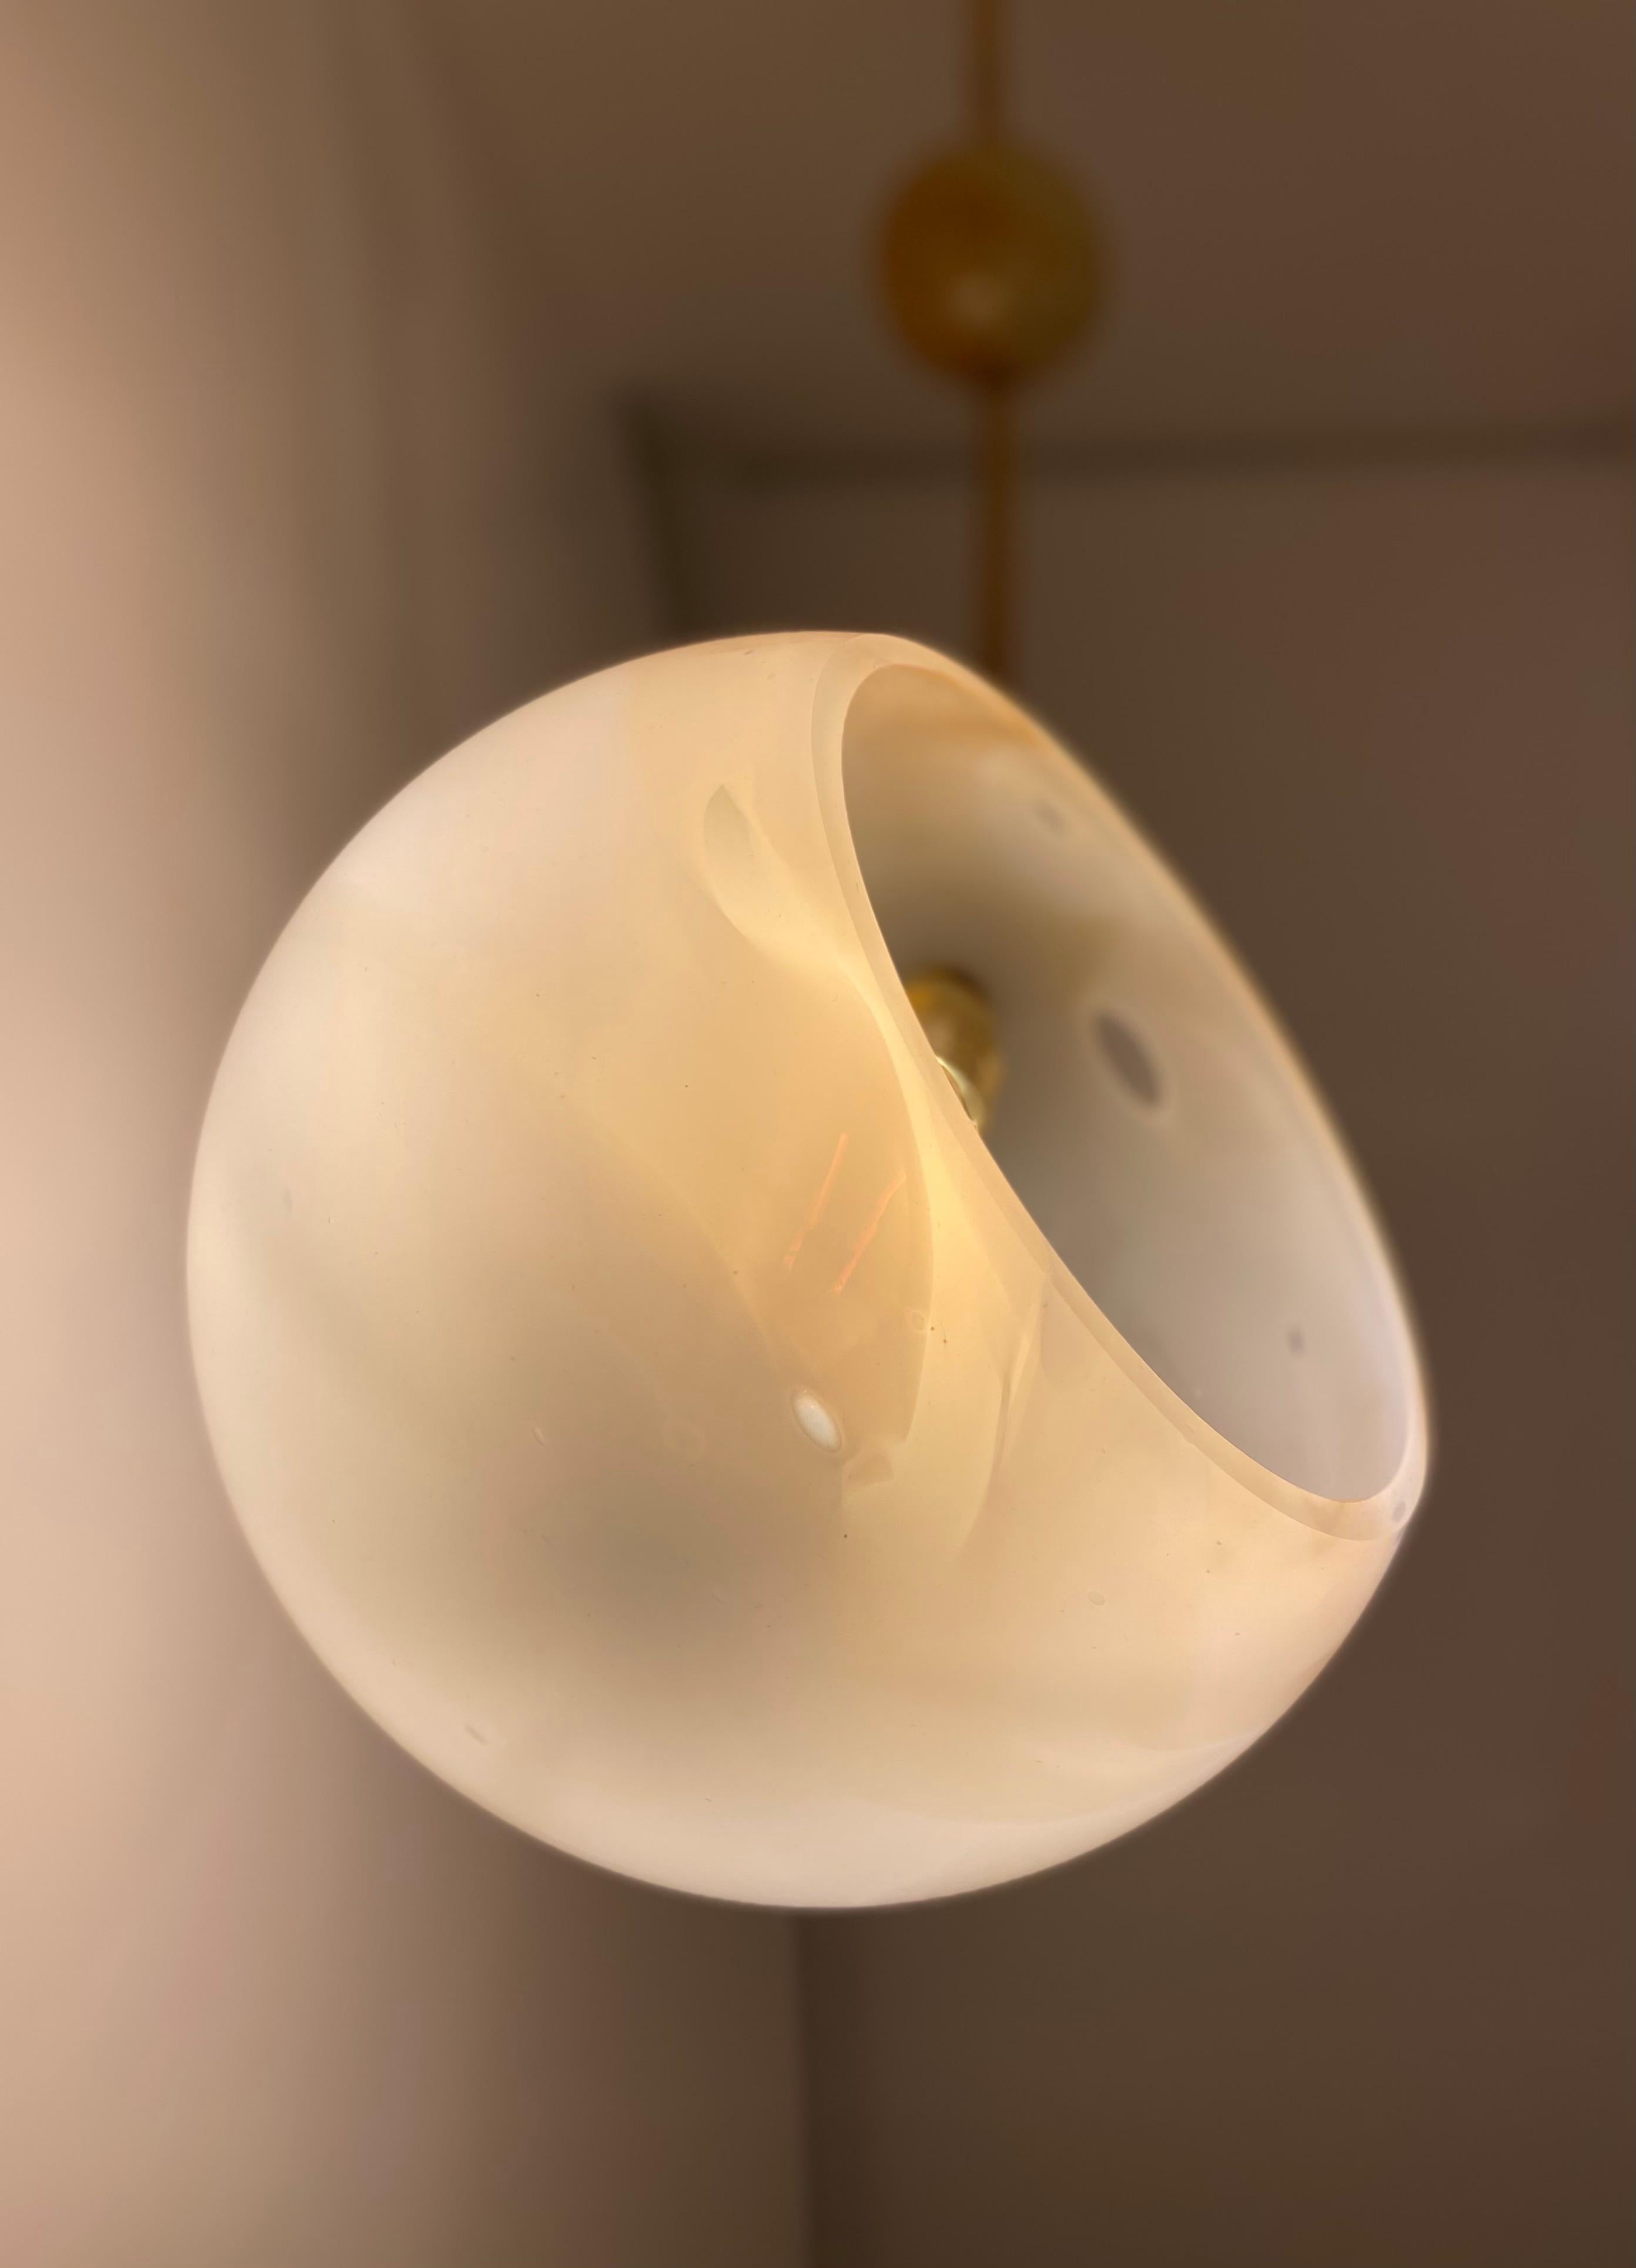 Die Solar-Pendelleuchte von Atelier George ist ein Einzelstück aus mundgeblasenem Glas mit einem Messingstiel. Sie besteht aus einer weißen Glaskugel mit bernsteinfarbenen Adern und drei Glasplaneten in blauen, grauen und ockerfarbenen Tönen, die